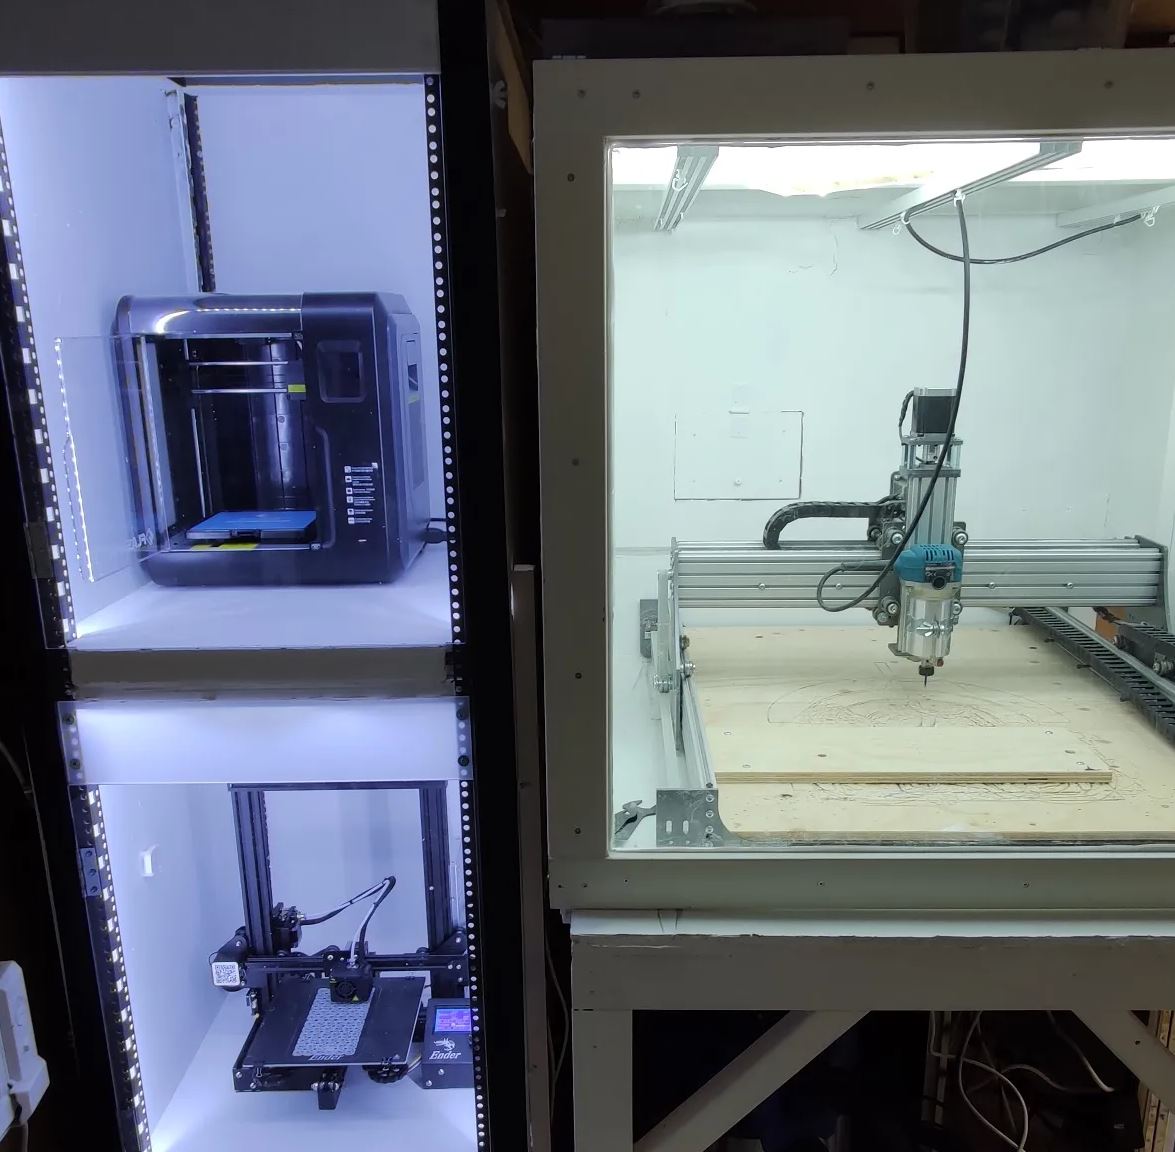 Projekt: Uppkopplade 3D skrivare & säkerhet